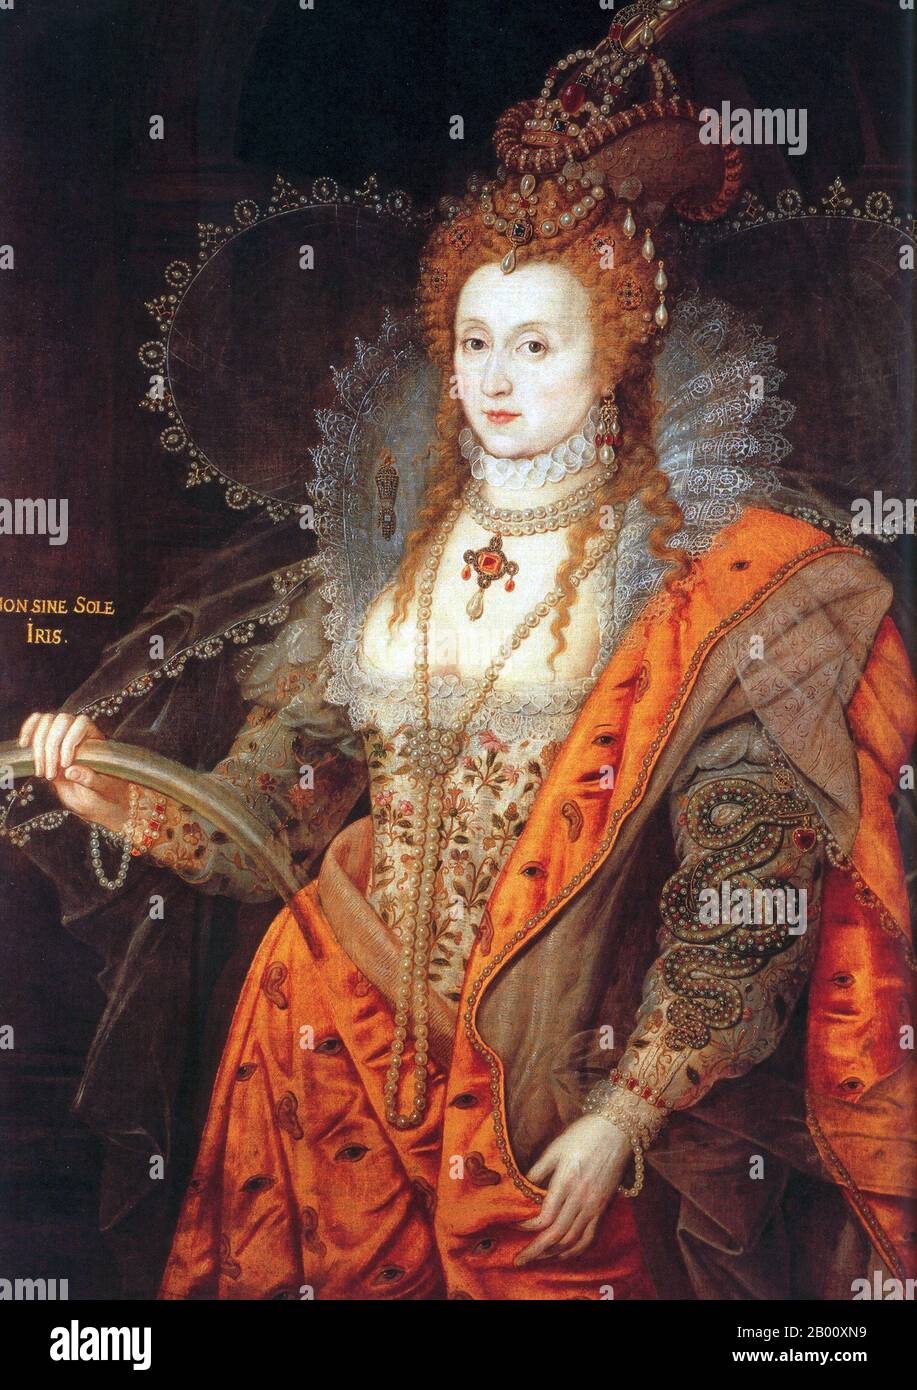 England: 'Das Regenbogenporträt von Königin Elizabeth I.'. Öl auf Leinwand Gemälde zugeschrieben entweder Isaac Oliver (c. 1565–1617) oder Marcus Gheeraerts der Jüngere (1561–1636), c. 1600-1602. Elisabeth I. (7. September 1533 – 24. März 1603) war Königin Regnant von England und Königin Regnant von Irland vom 17. November 1558 bis zu ihrem Tod. Manchmal auch die Jungfrau Königin, Gloriana oder gute Königin Bess genannt, war Elisabeth der fünfte und letzte Monarch der Tudor-Dynastie. Elizabeth I.'s Außenpolitik in Bezug auf Asien, Afrika und Lateinamerika zeigte ein neues Verständnis der globalen wirtschaftlichen Rolle Englands Stockfoto